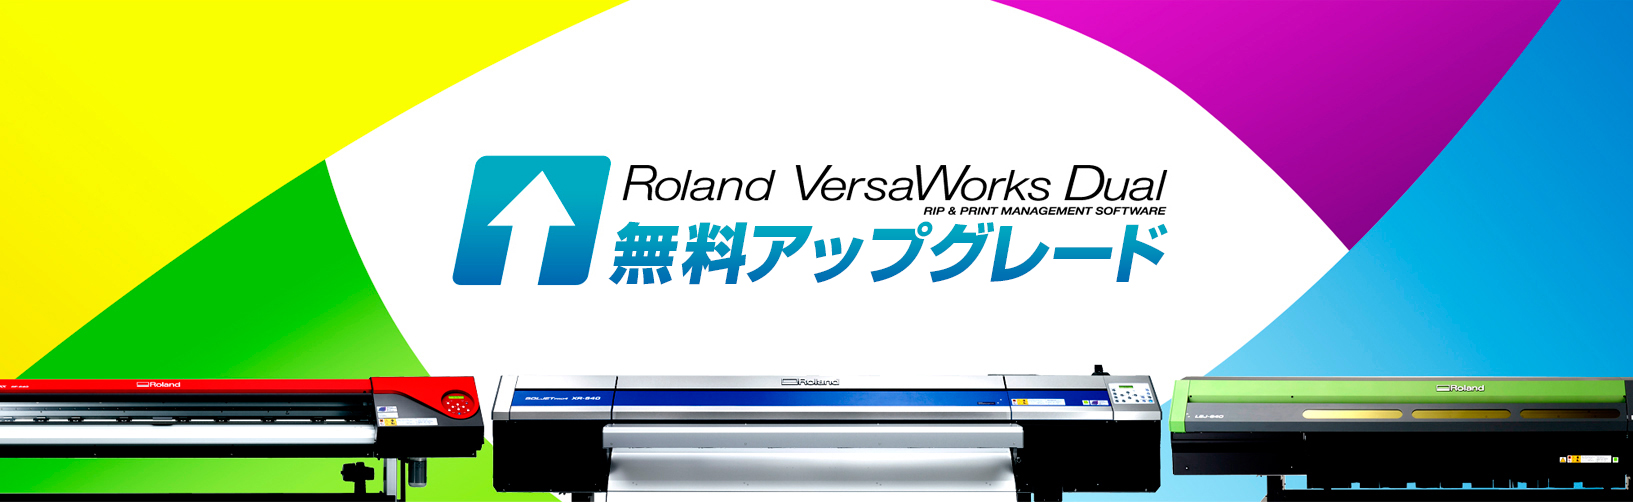 Roland versaworks 4.0 download